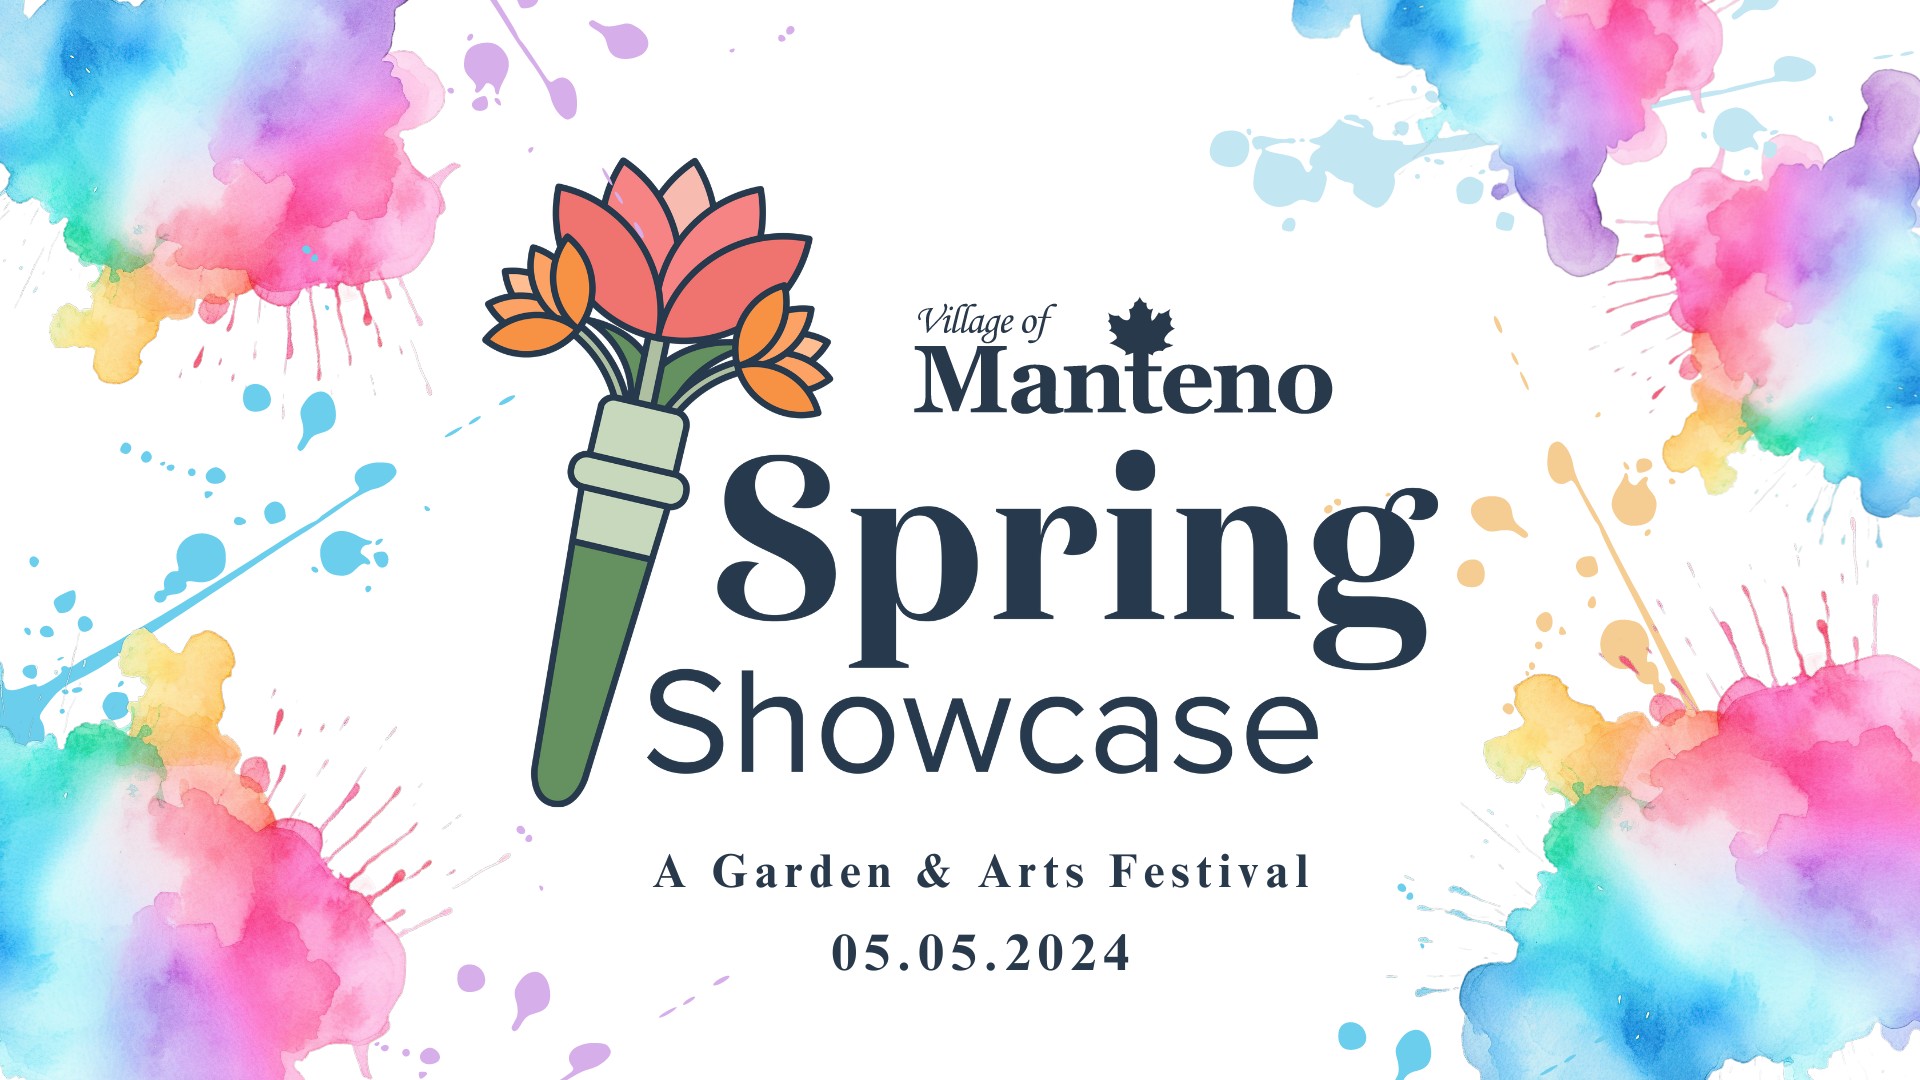 Spring Showcase: A Garden & Arts Festival